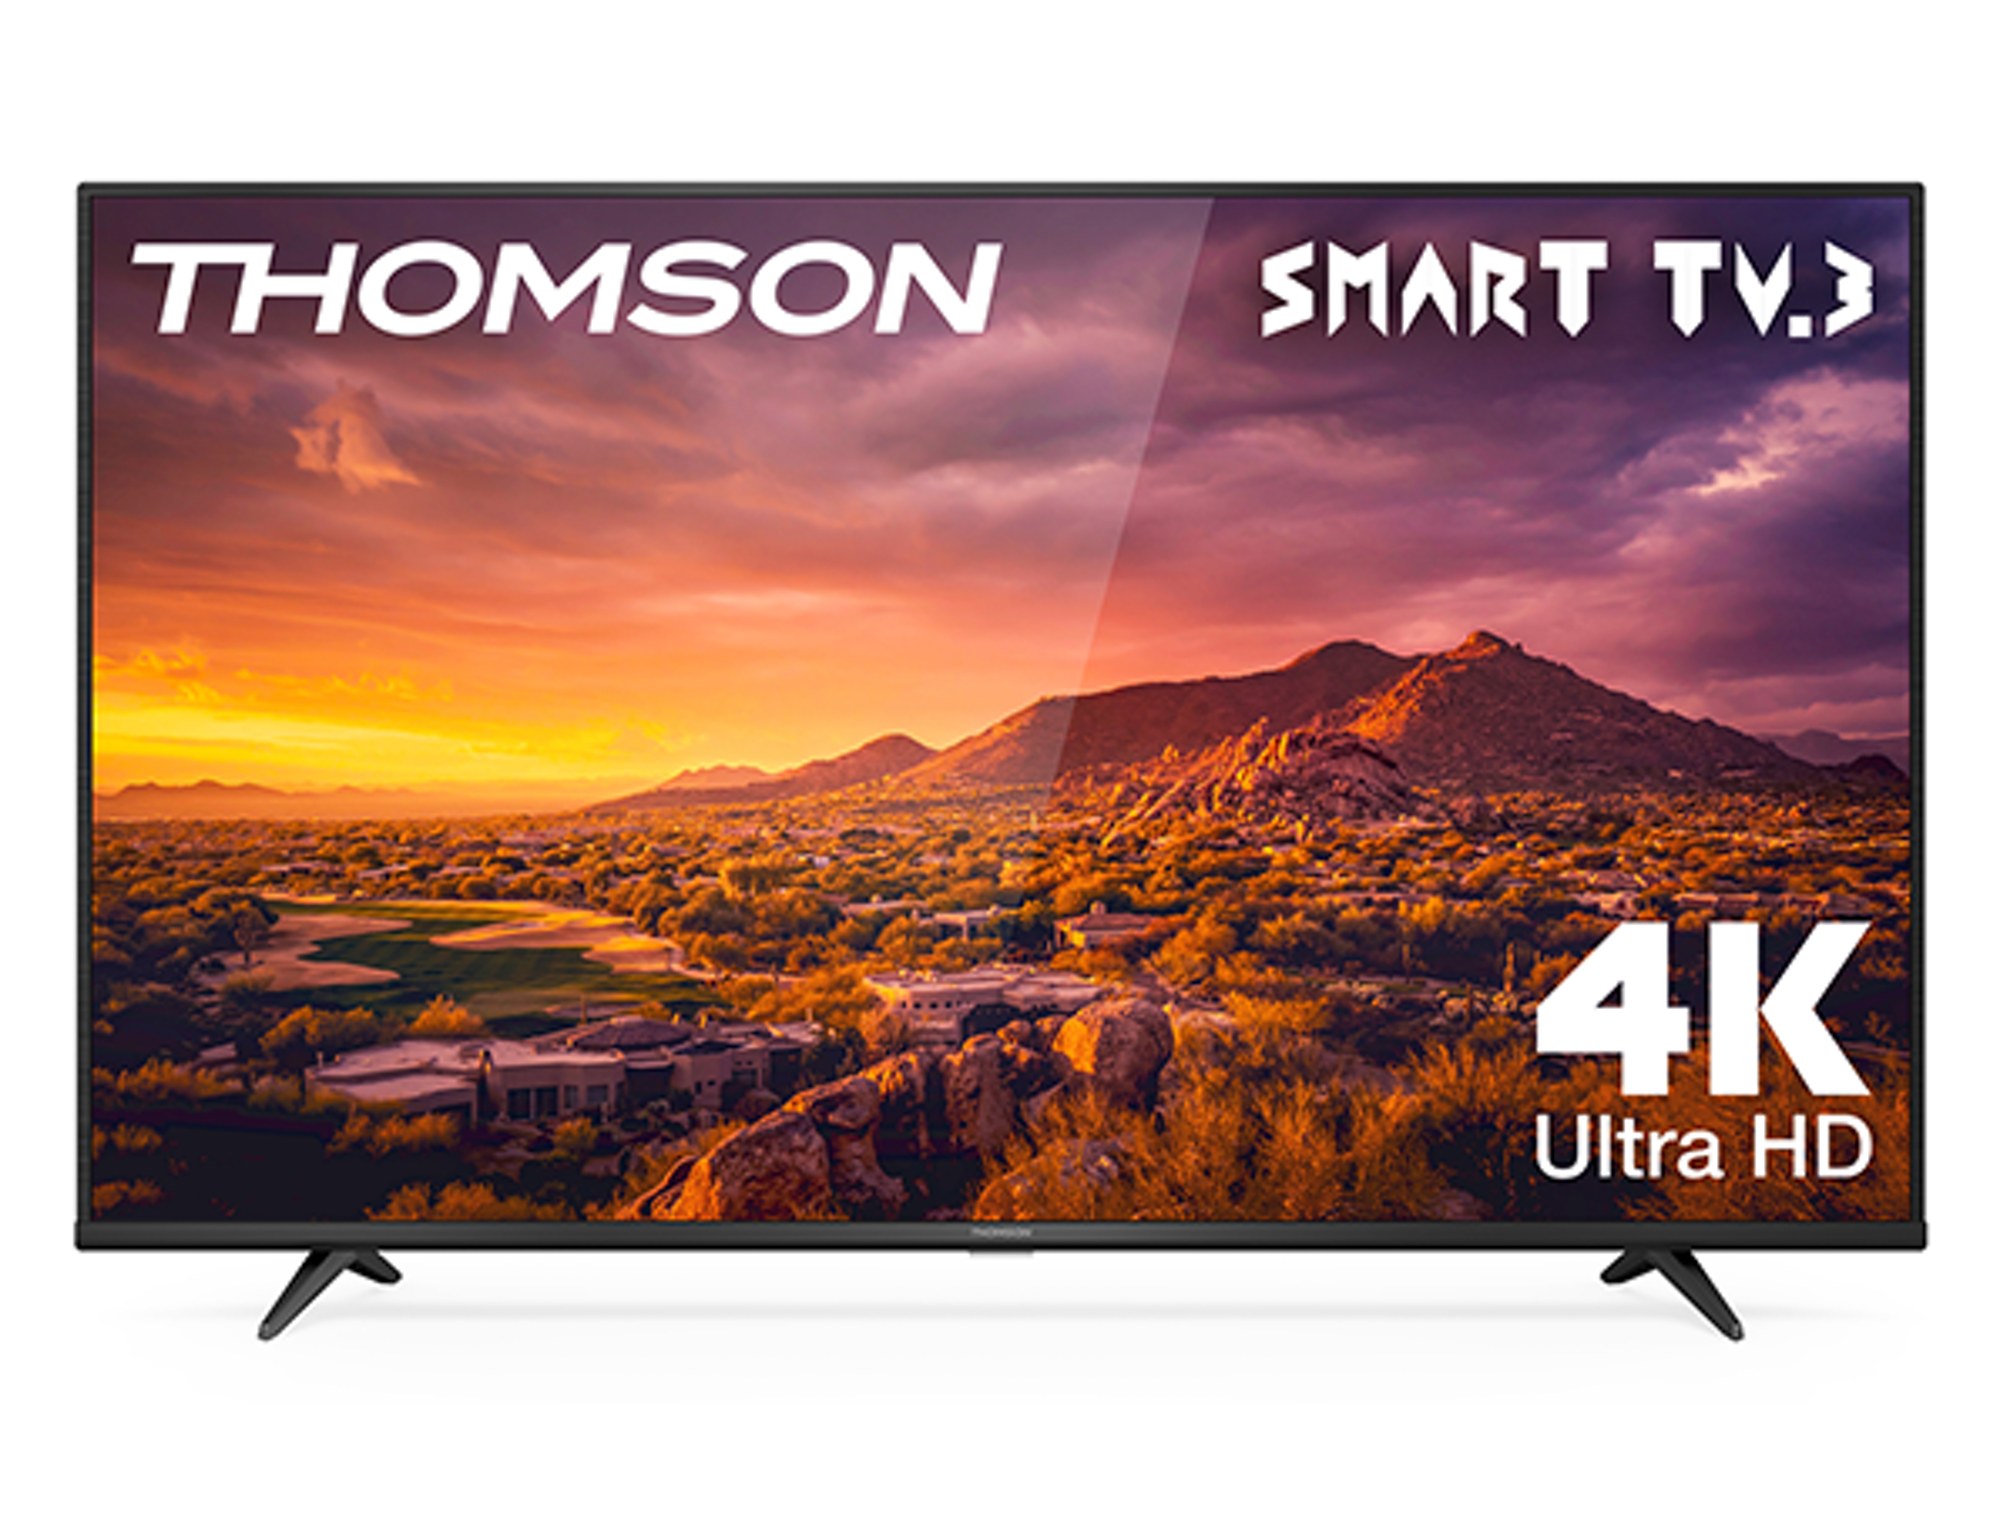 Thomson G63 Series 55UG6300 TV